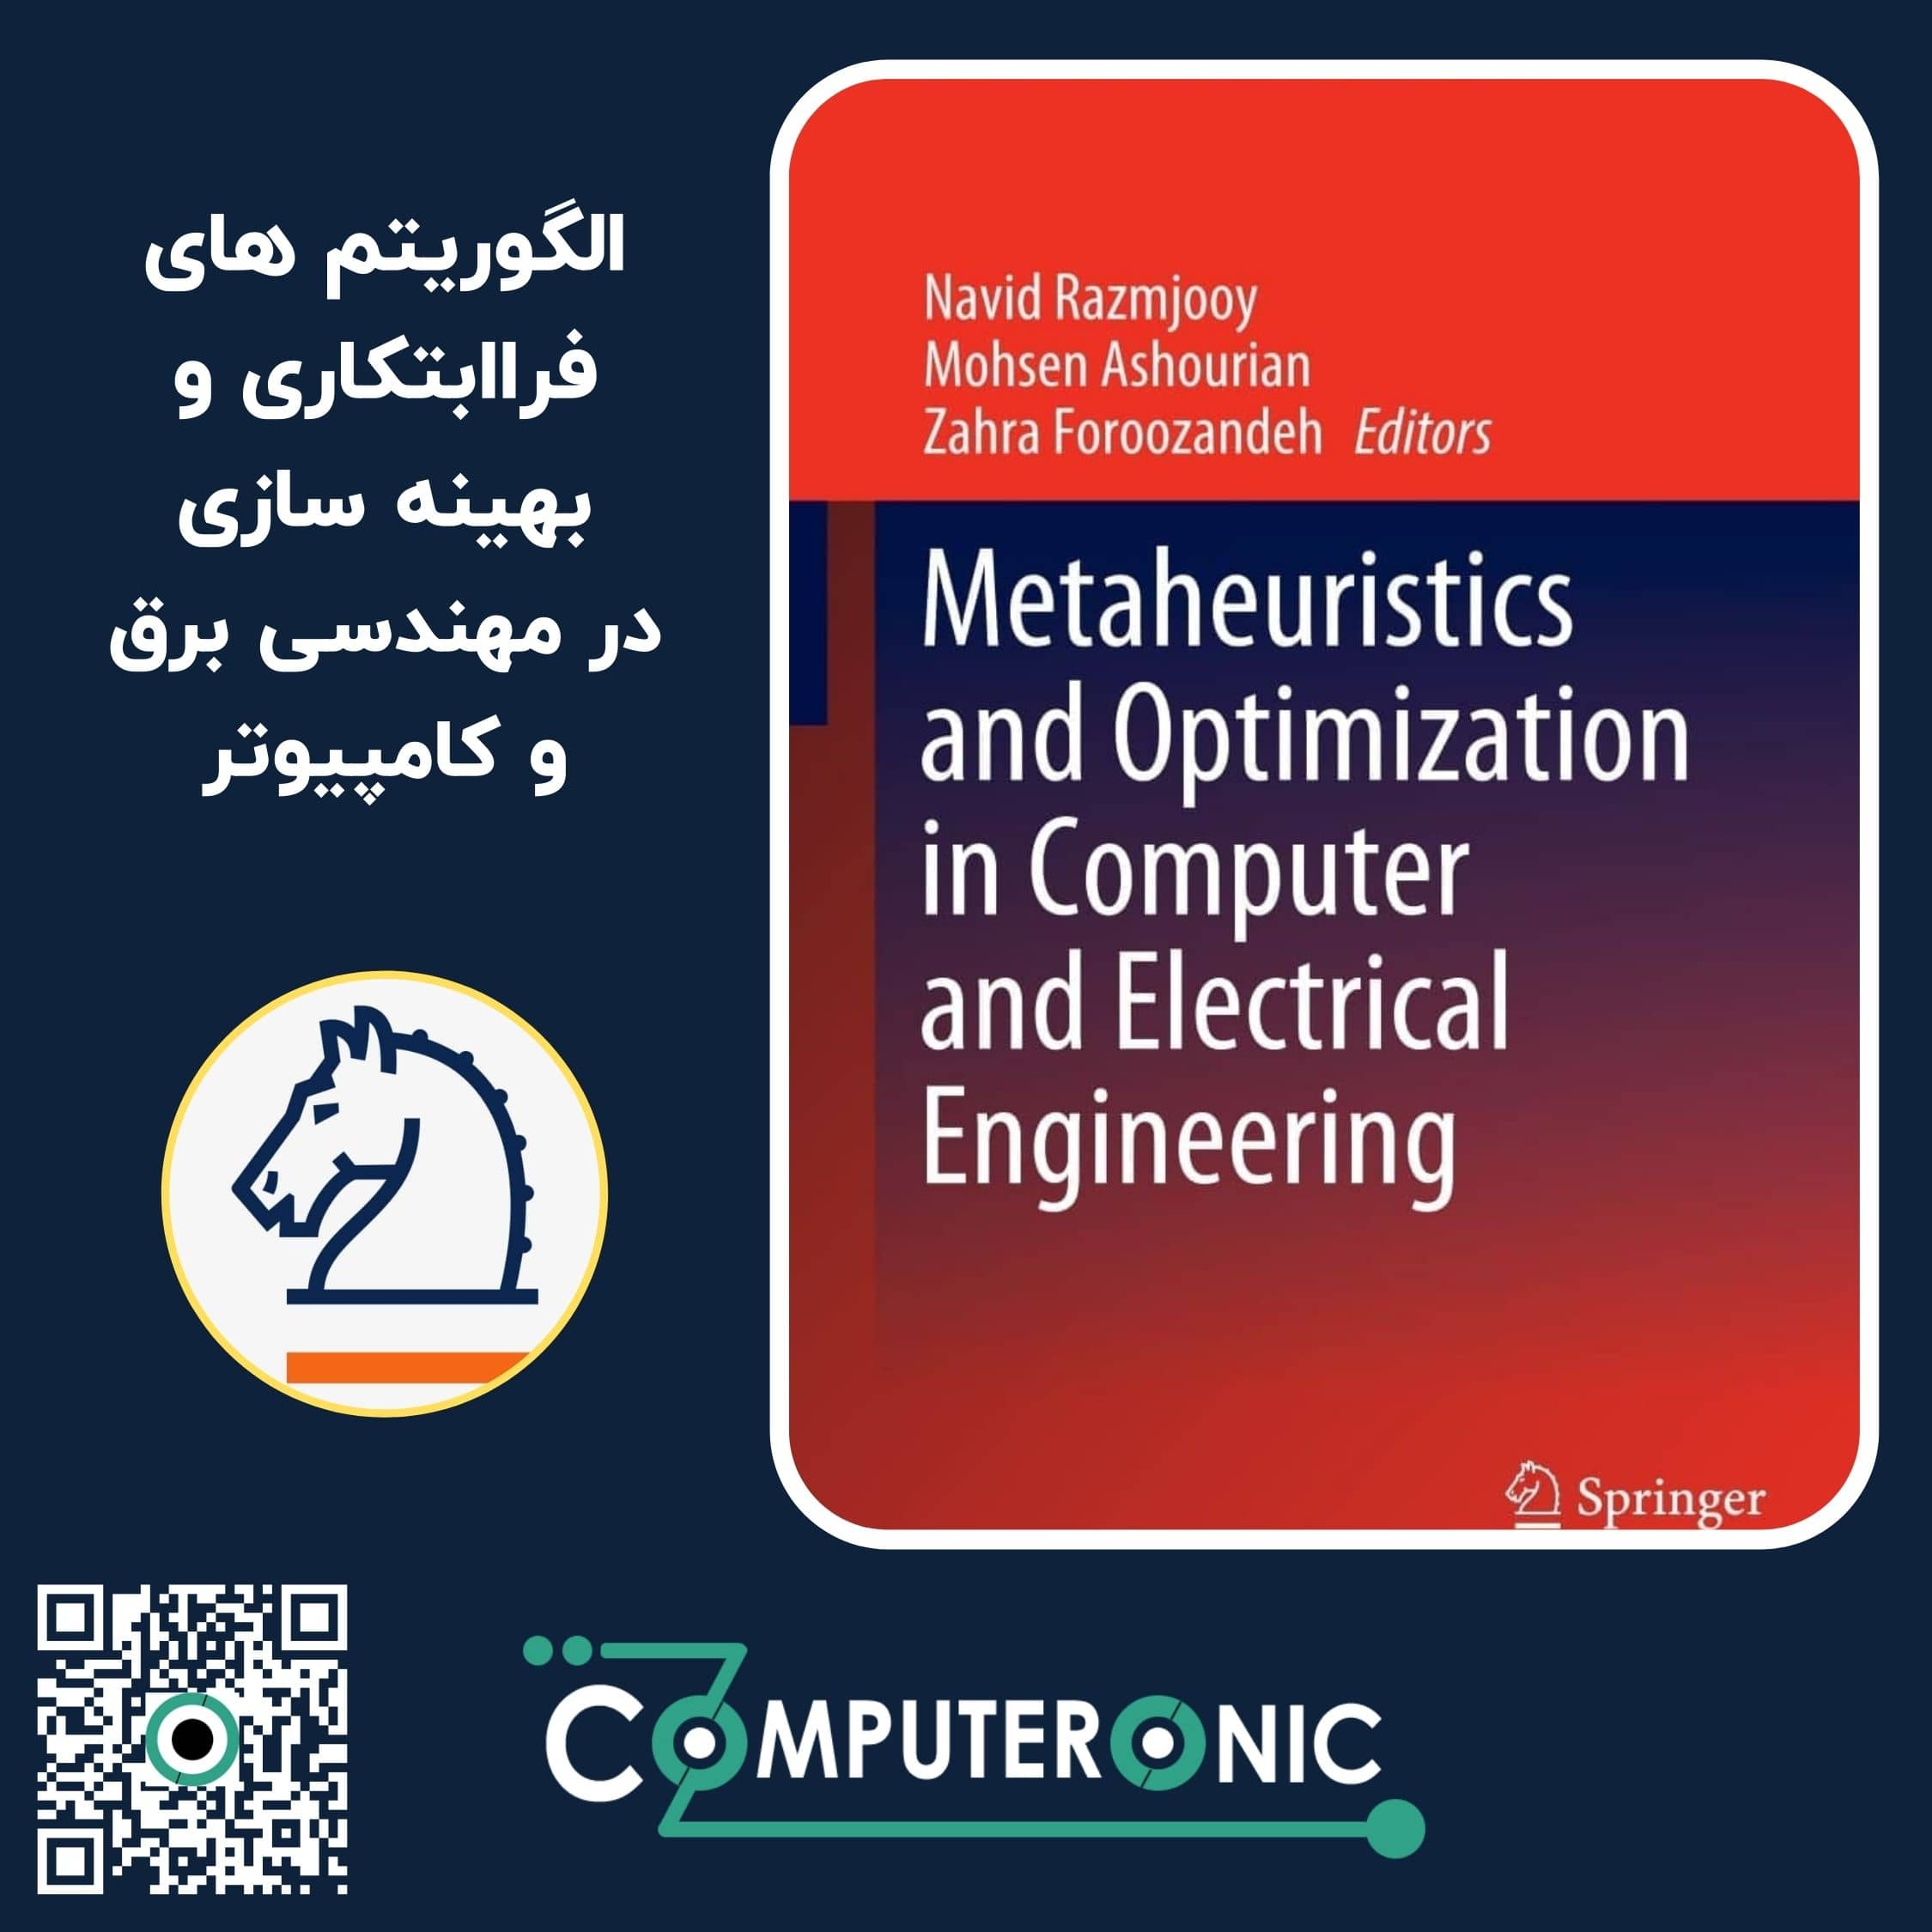 کتاب الگوریتم های فرا ابتکاری و بهینه سازی در مهندسی برق و کامپیوتر